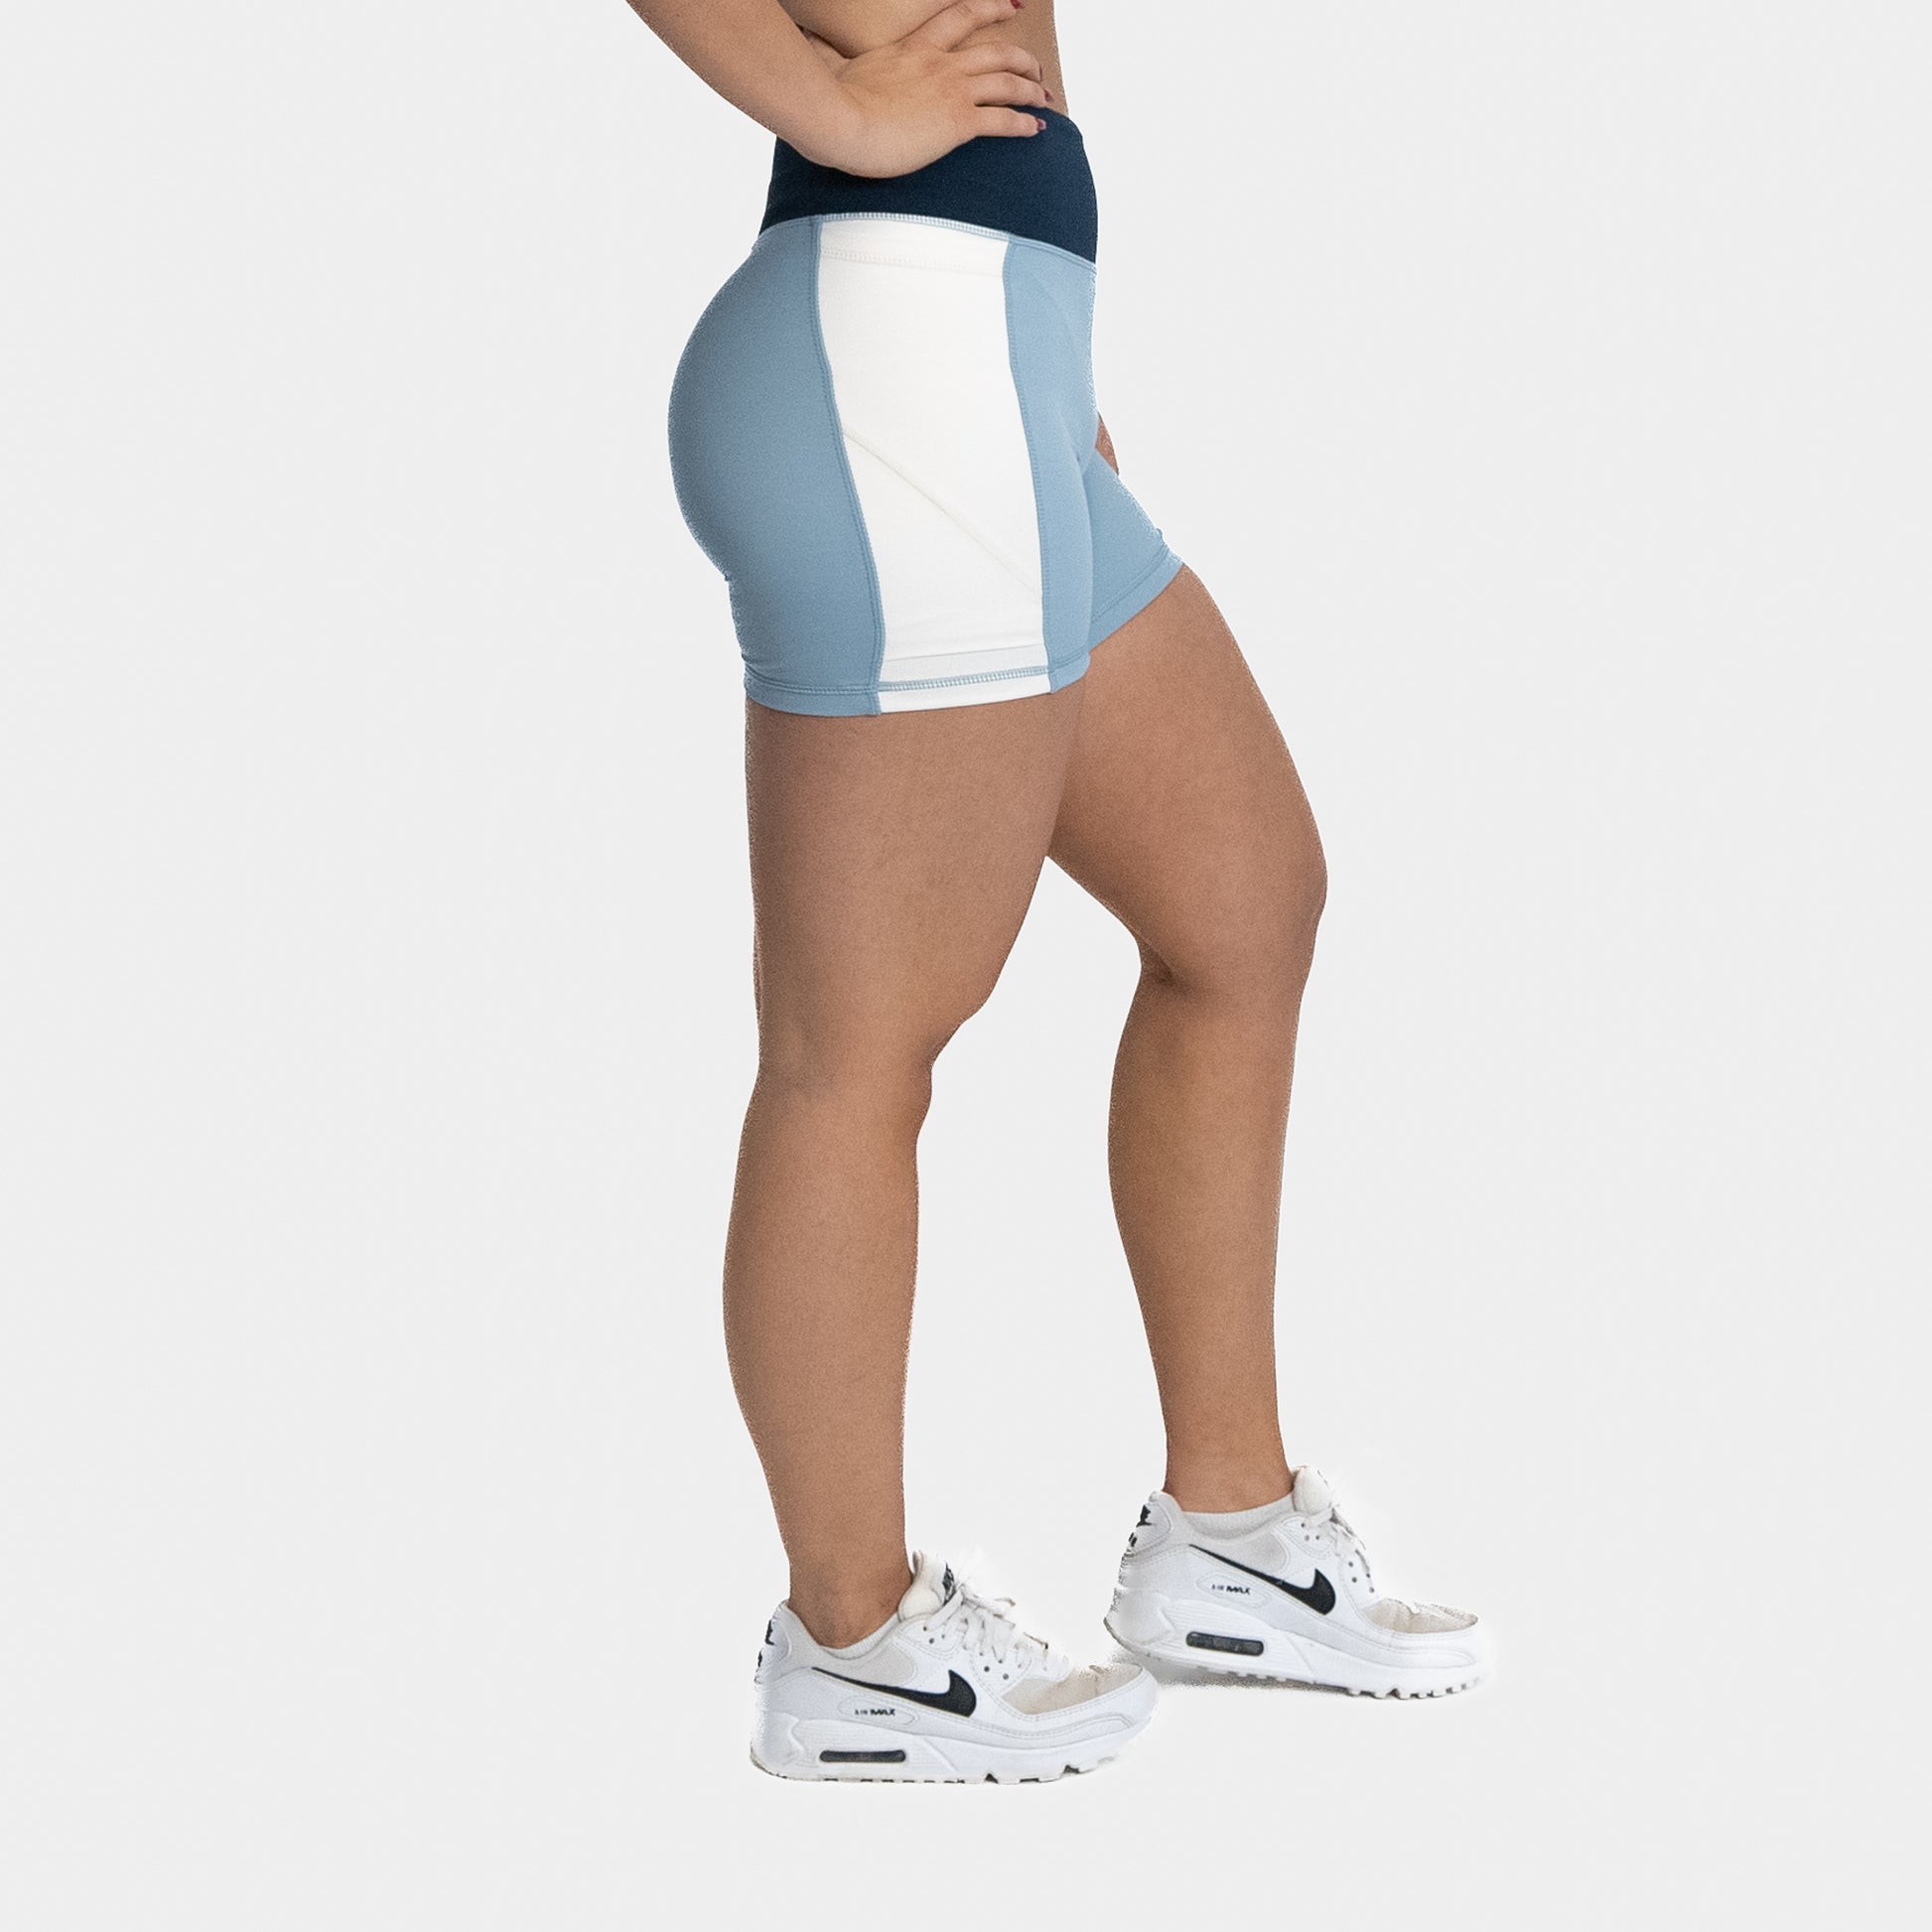 MM Madeline Shorts - Black – Senita Athletics